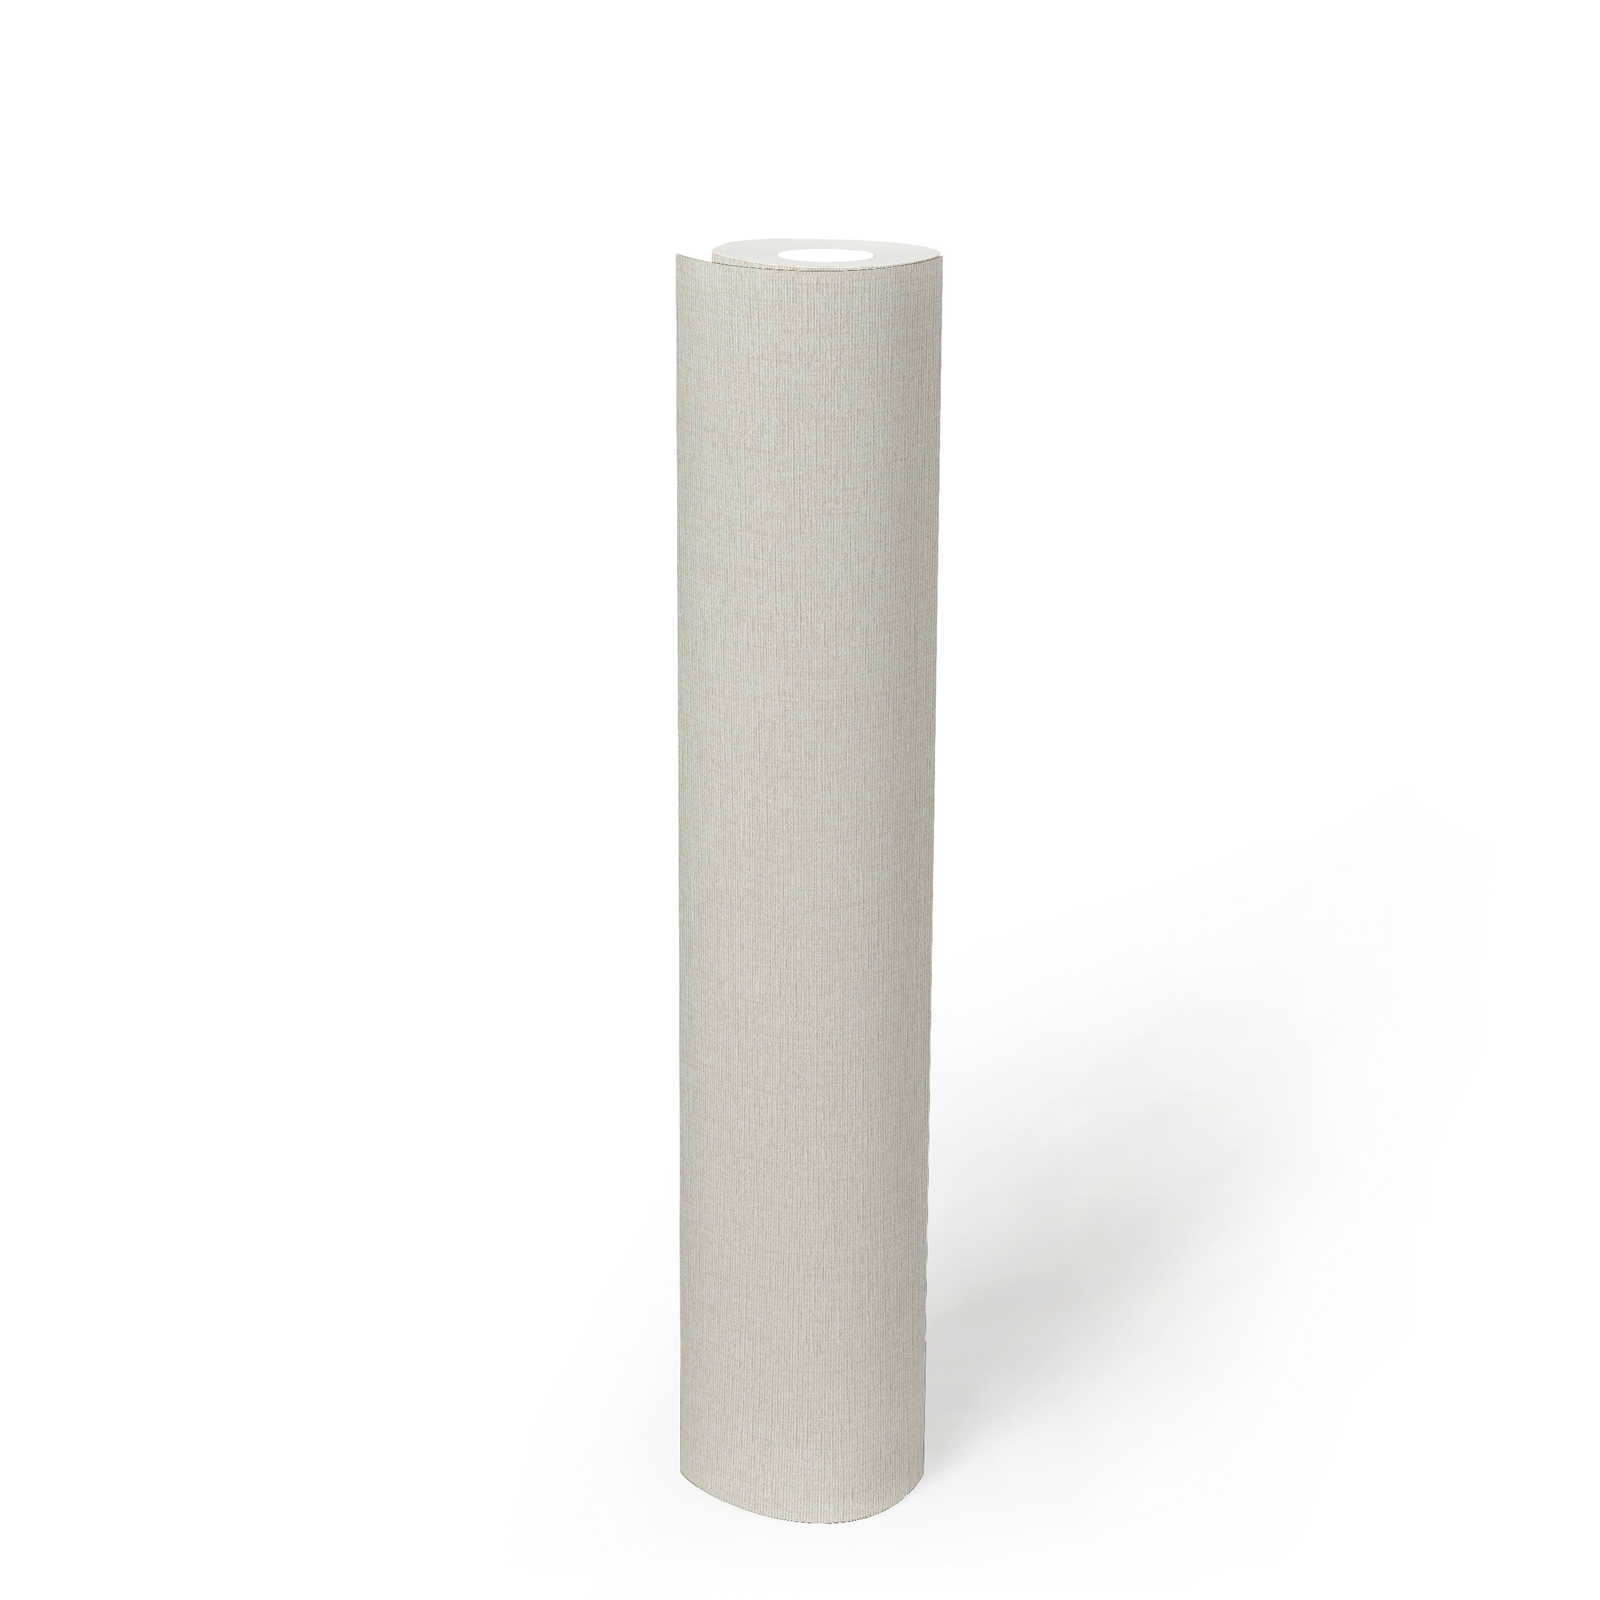             Plain non-woven wallpaper with structure design, matt - cream, white
        